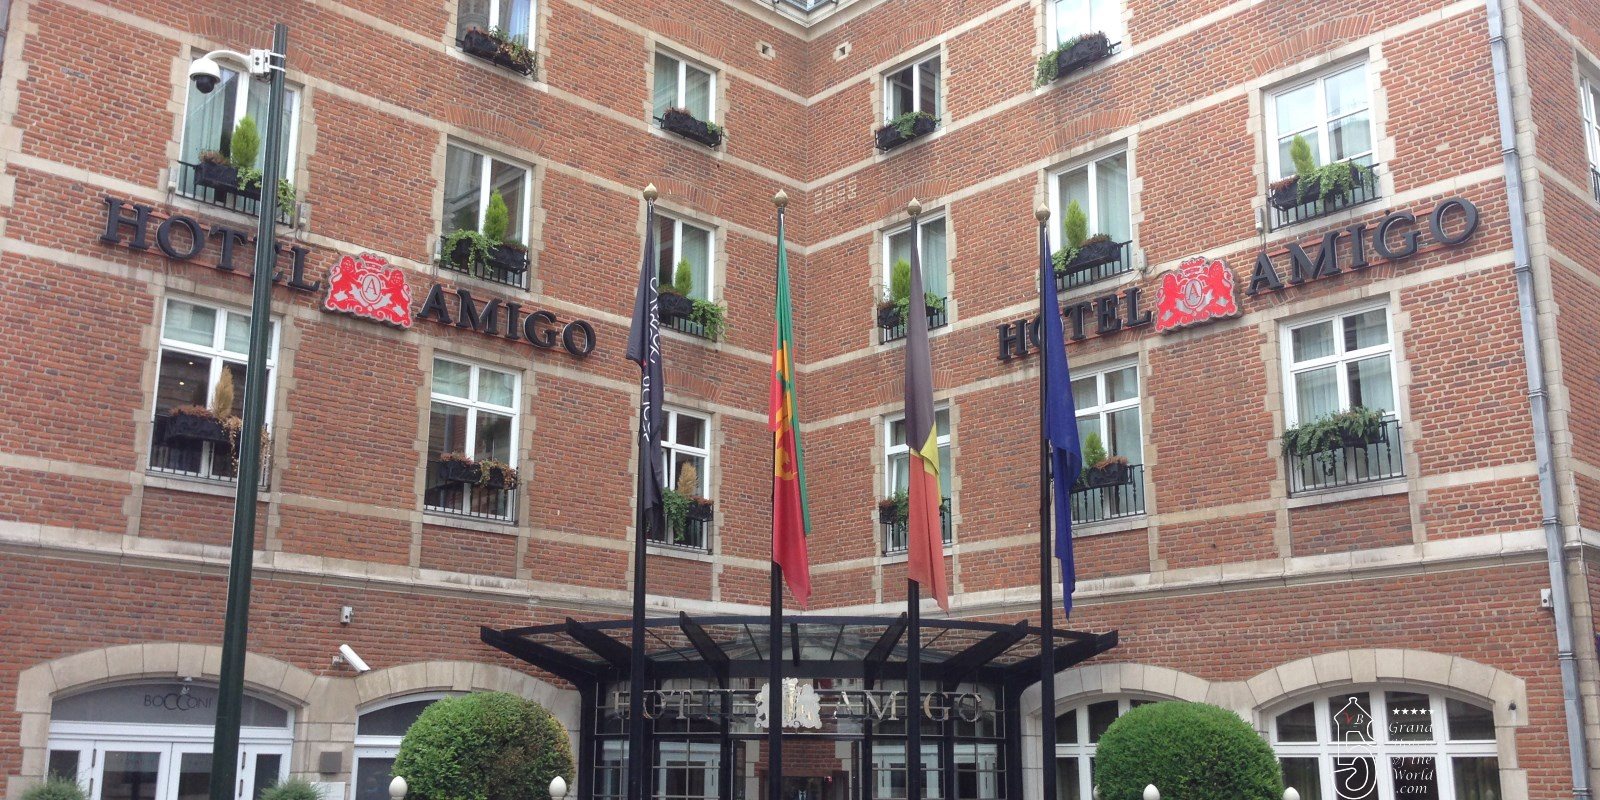 Aloft, Max Hotel, Pantone Hotel : Bruxelles, laboratoire de tendances